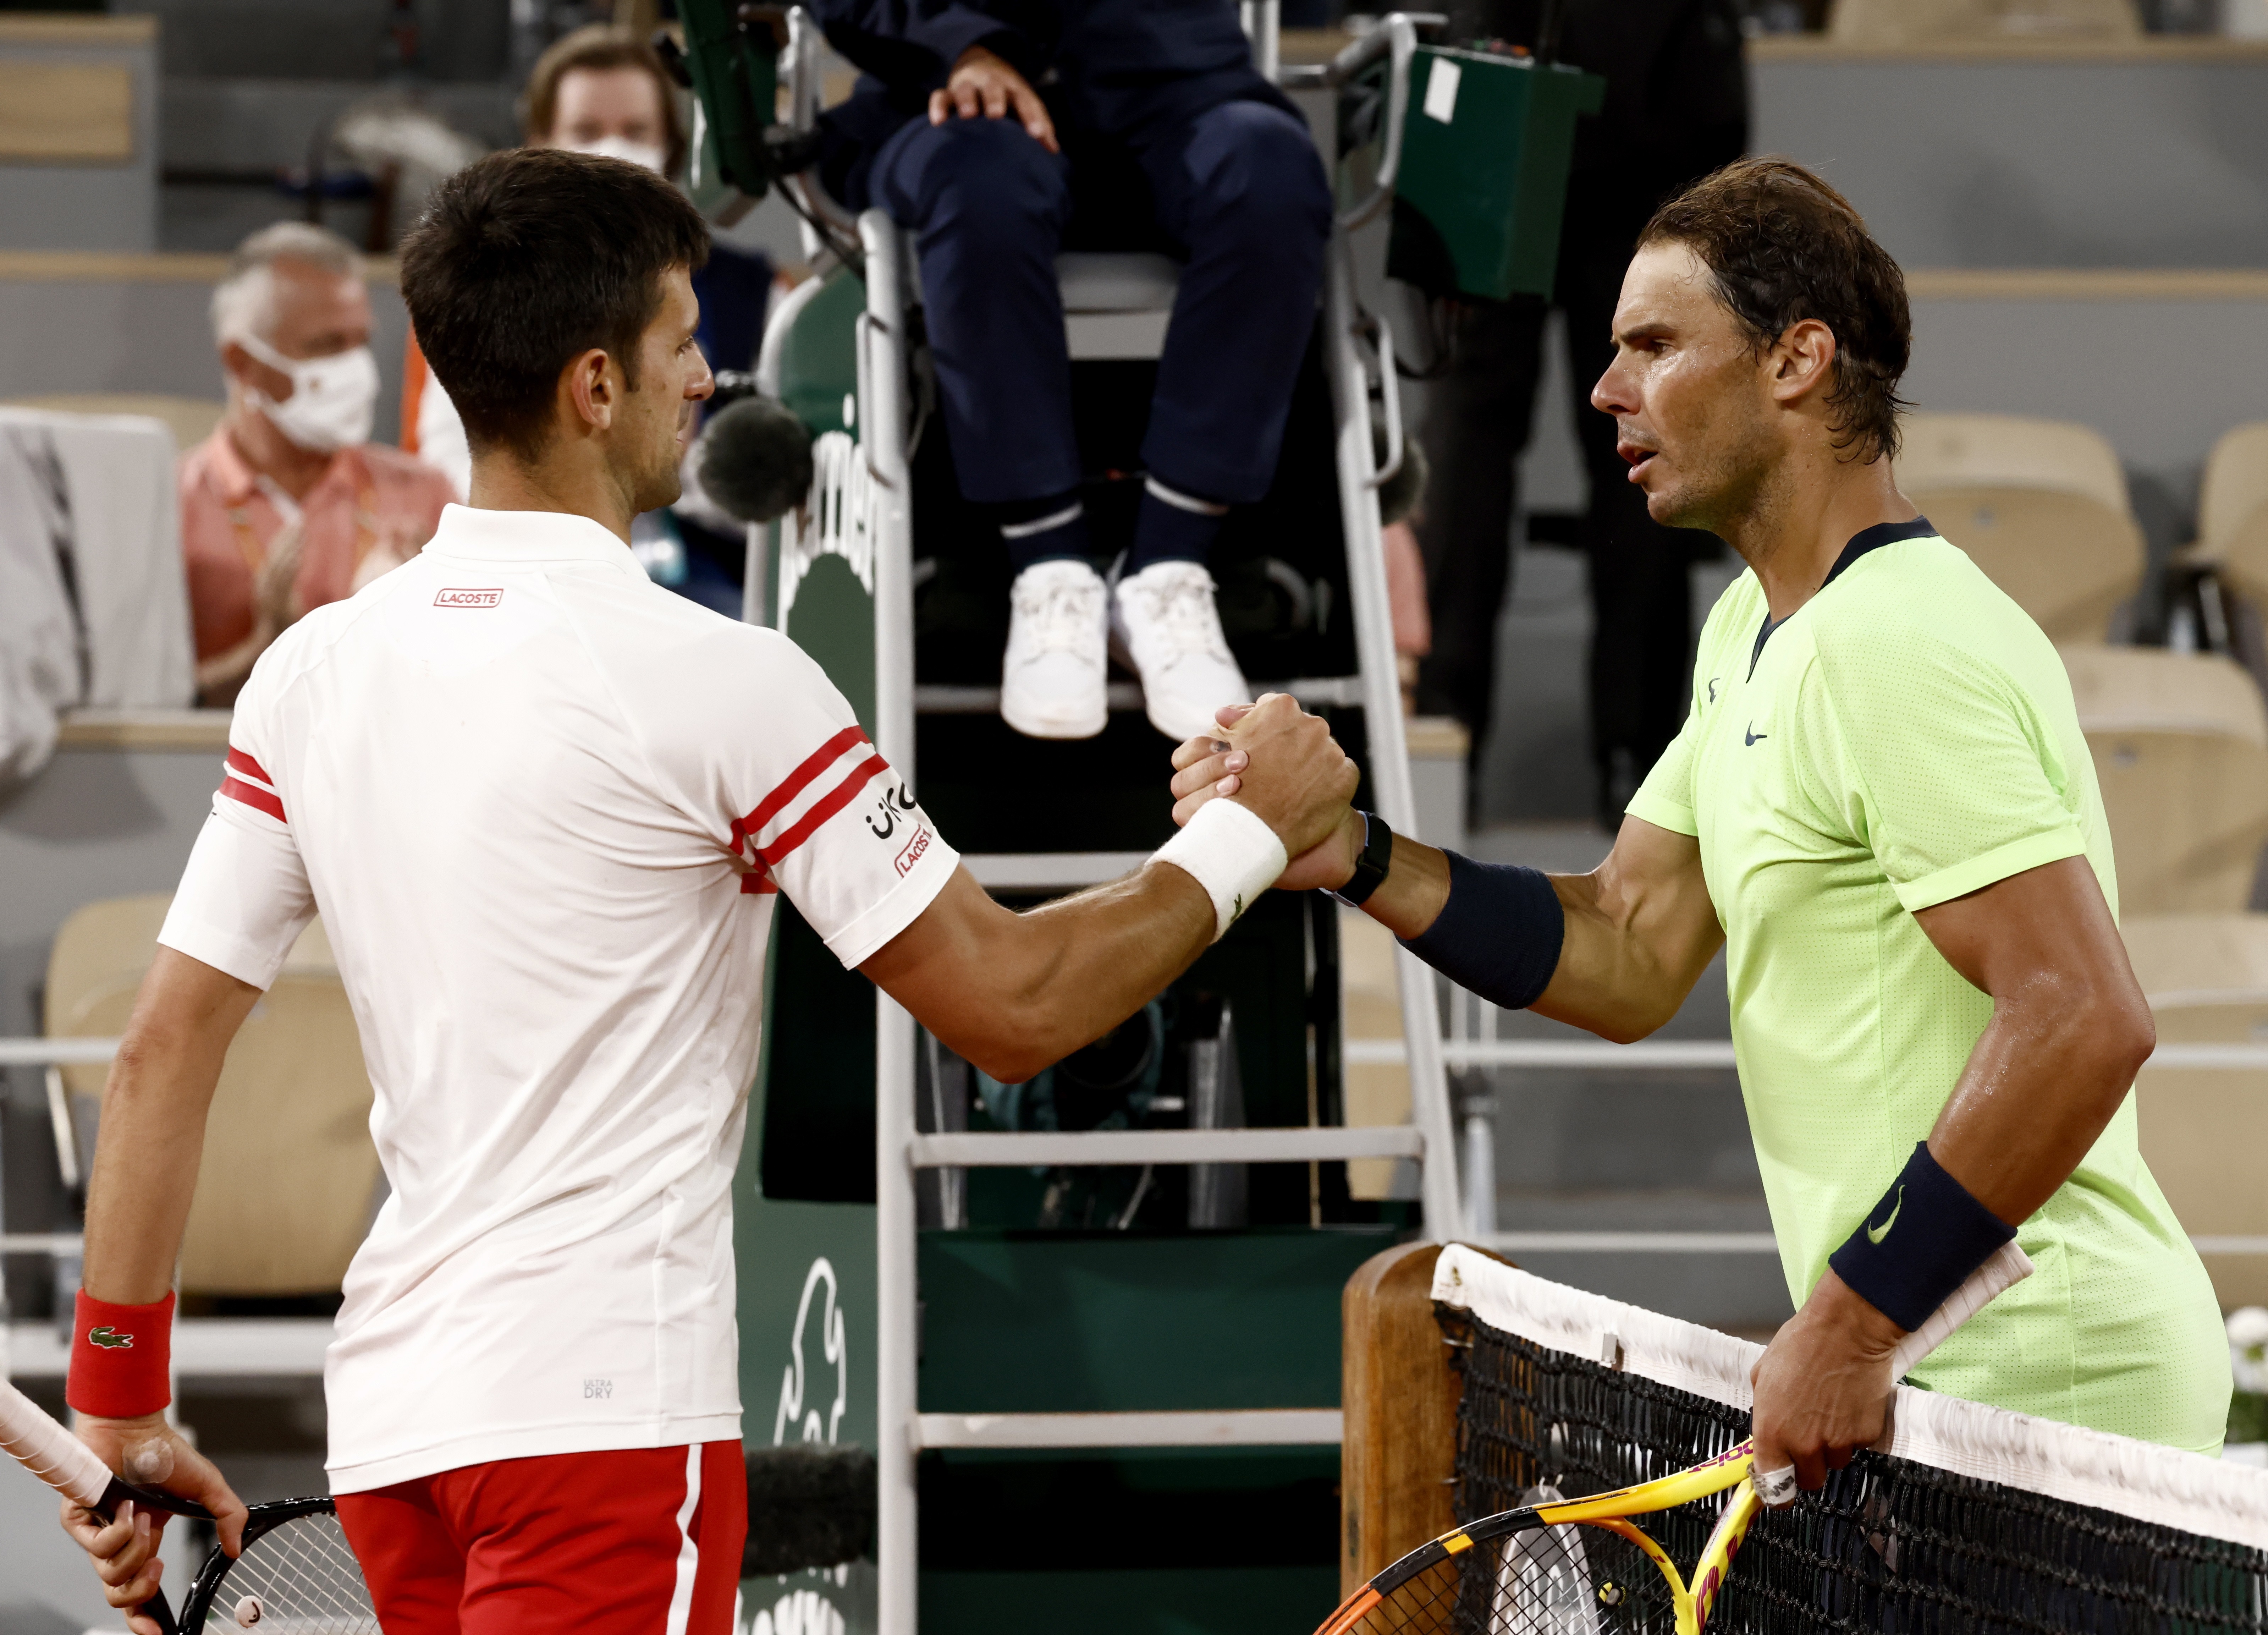 Los nueve enfrentamientos previos de Nadal y Djokovic en Roland Garros